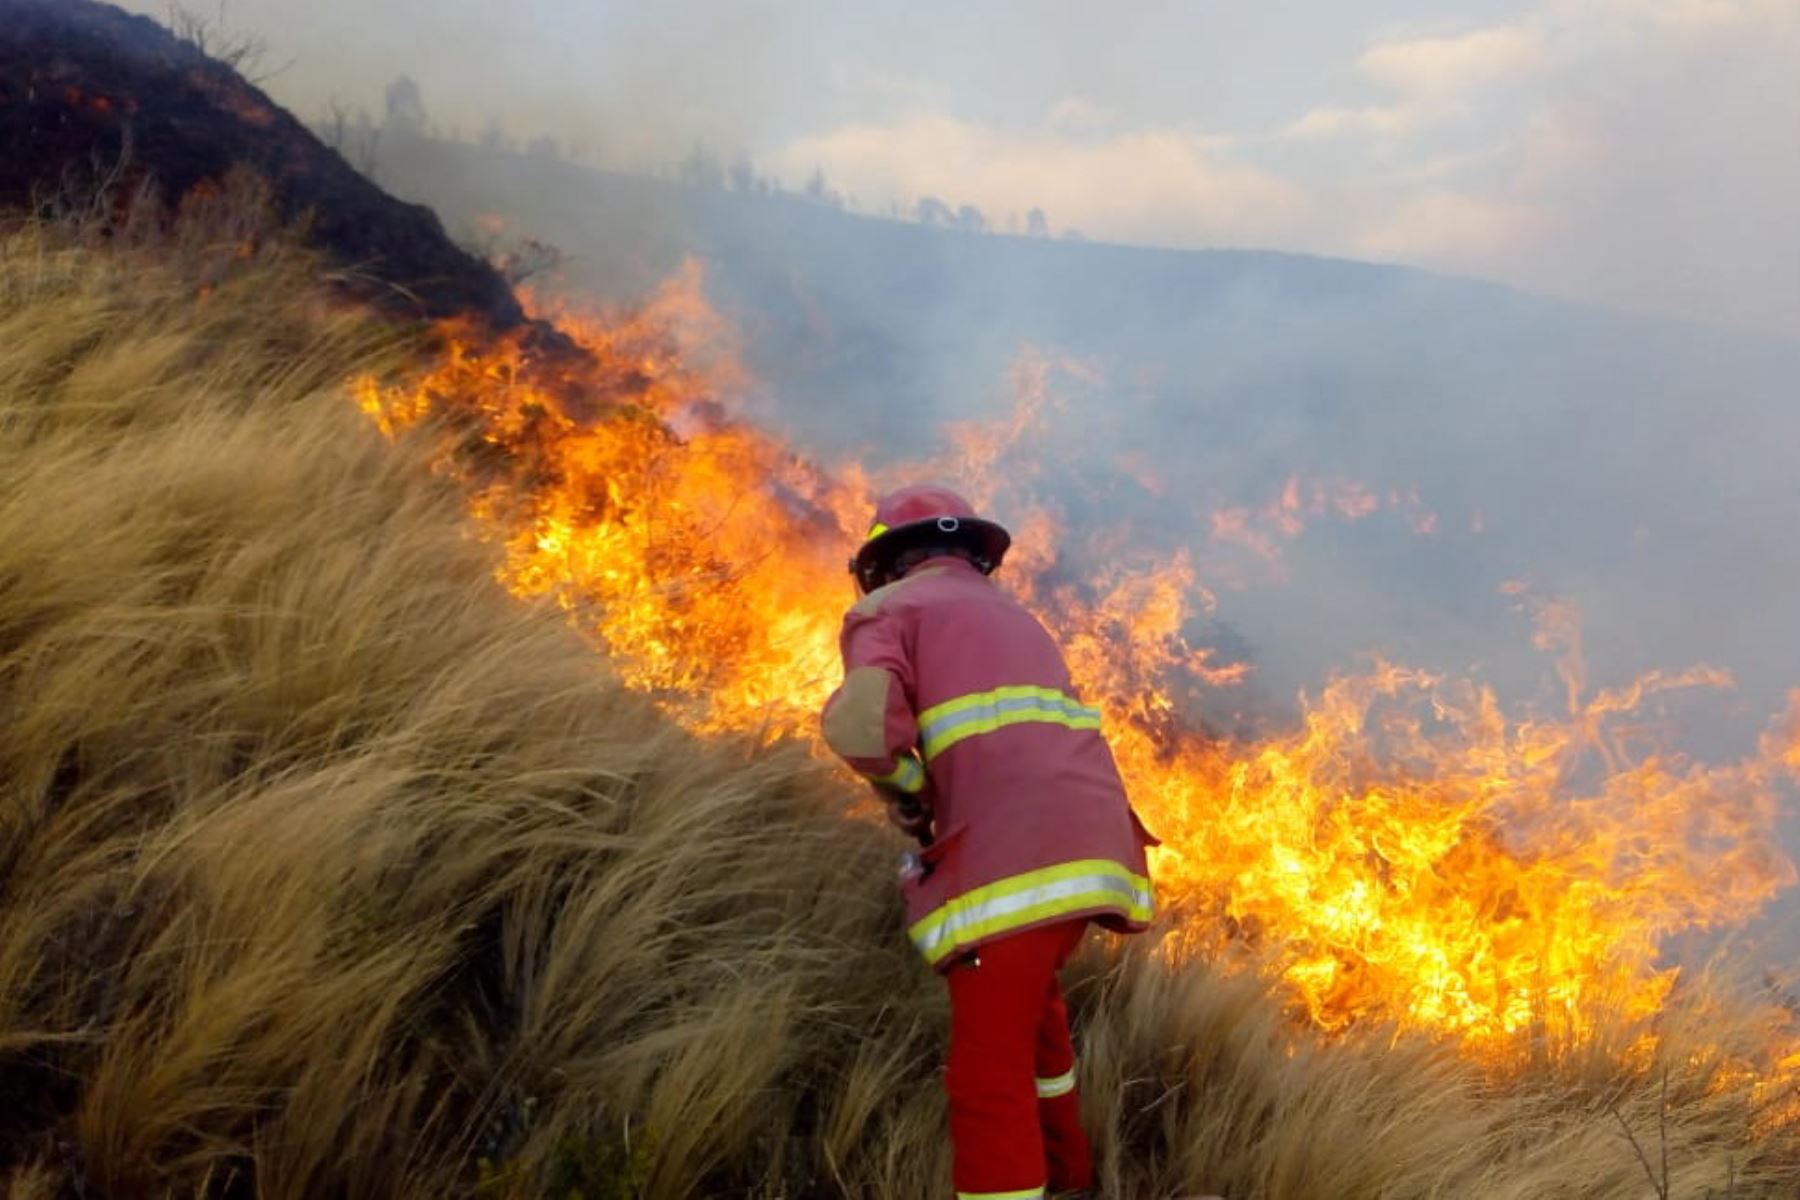 "Los incendios forestales son un problema latente que afecta sustancialmente a los ecosistemas", señala el Serfor. ANDINA/Difusión